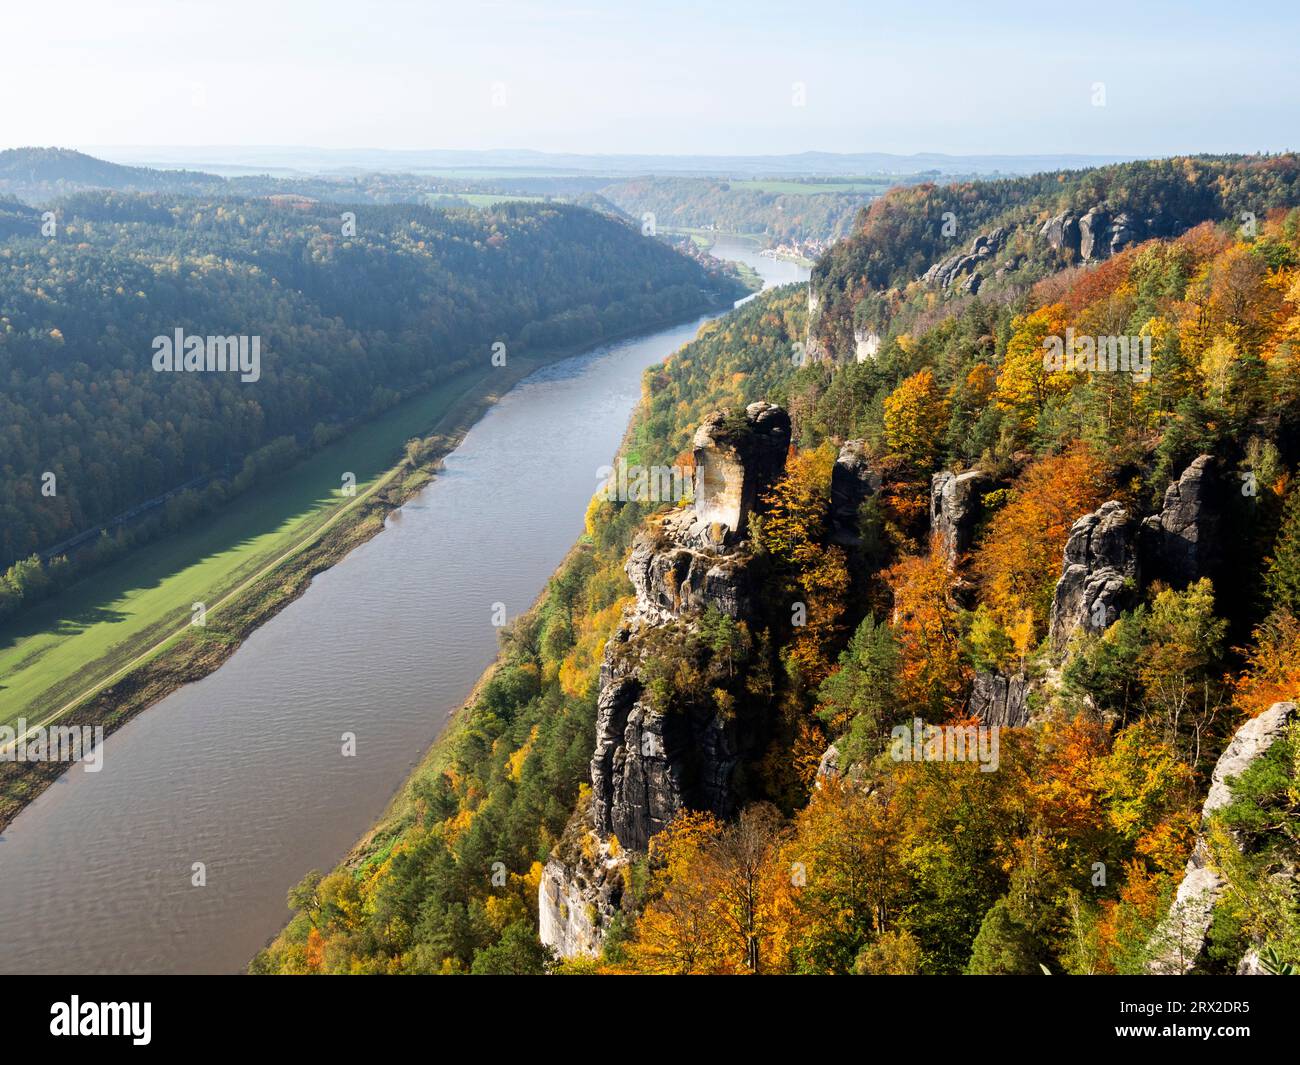 Una vista dello sperone roccioso che si affaccia sul fiume Elba nel Parco Nazionale della Svizzera sassone, Sassonia, Germania, Europa Foto Stock